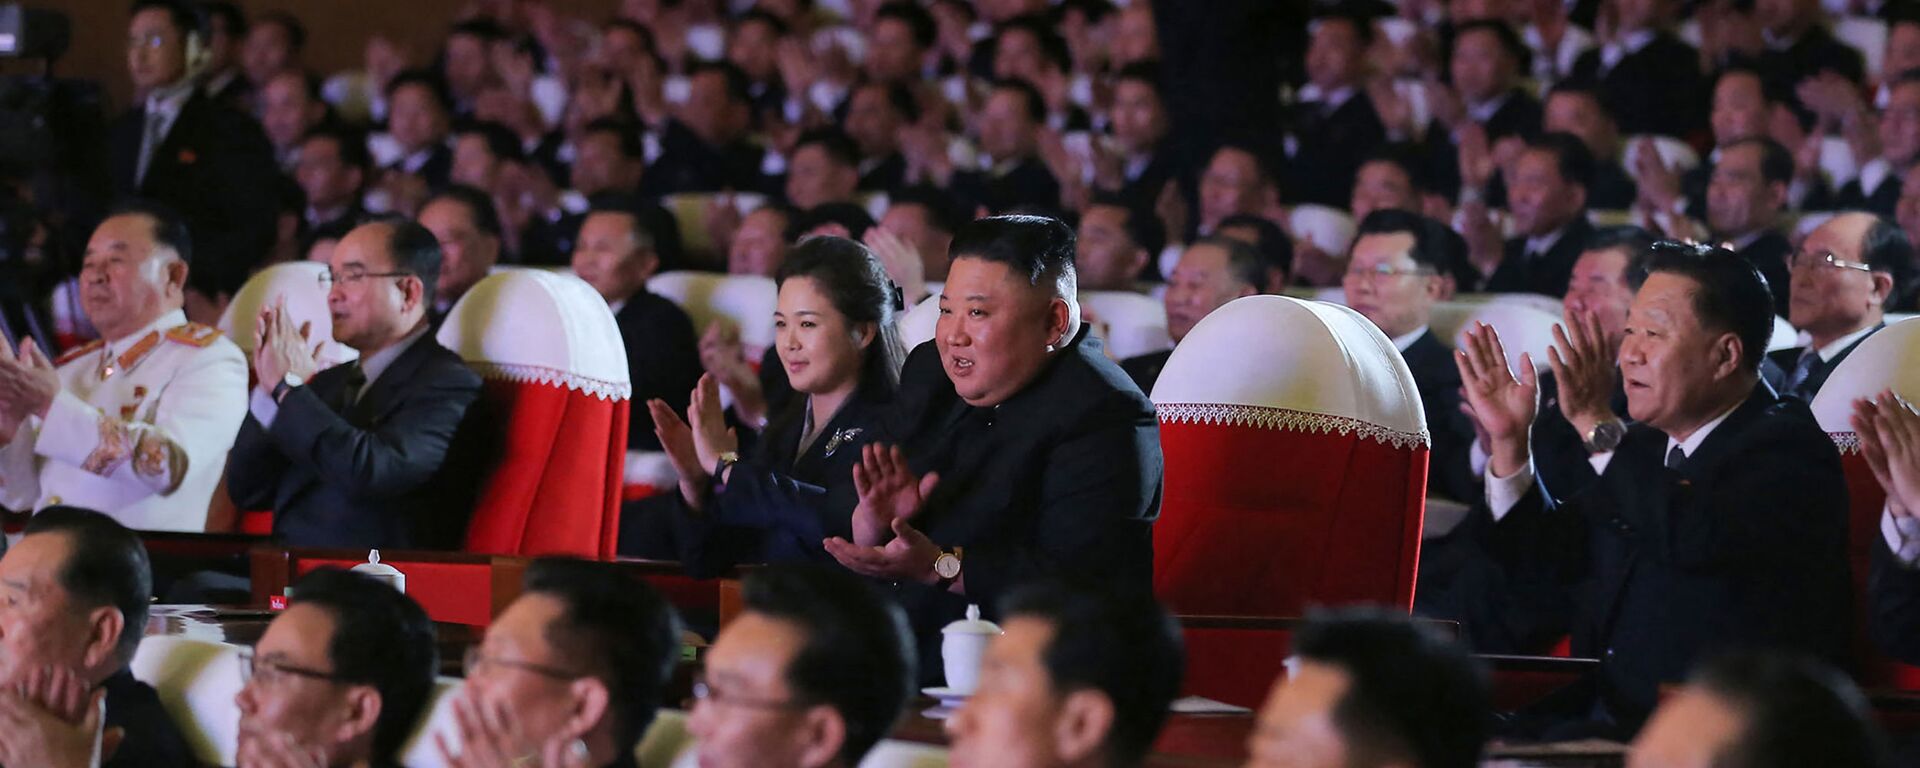 Đệ nhất phu nhân Bắc Triều Tiên lần đầu tái xuất sau cả năm vắng bóng - Sputnik Việt Nam, 1920, 17.02.2021